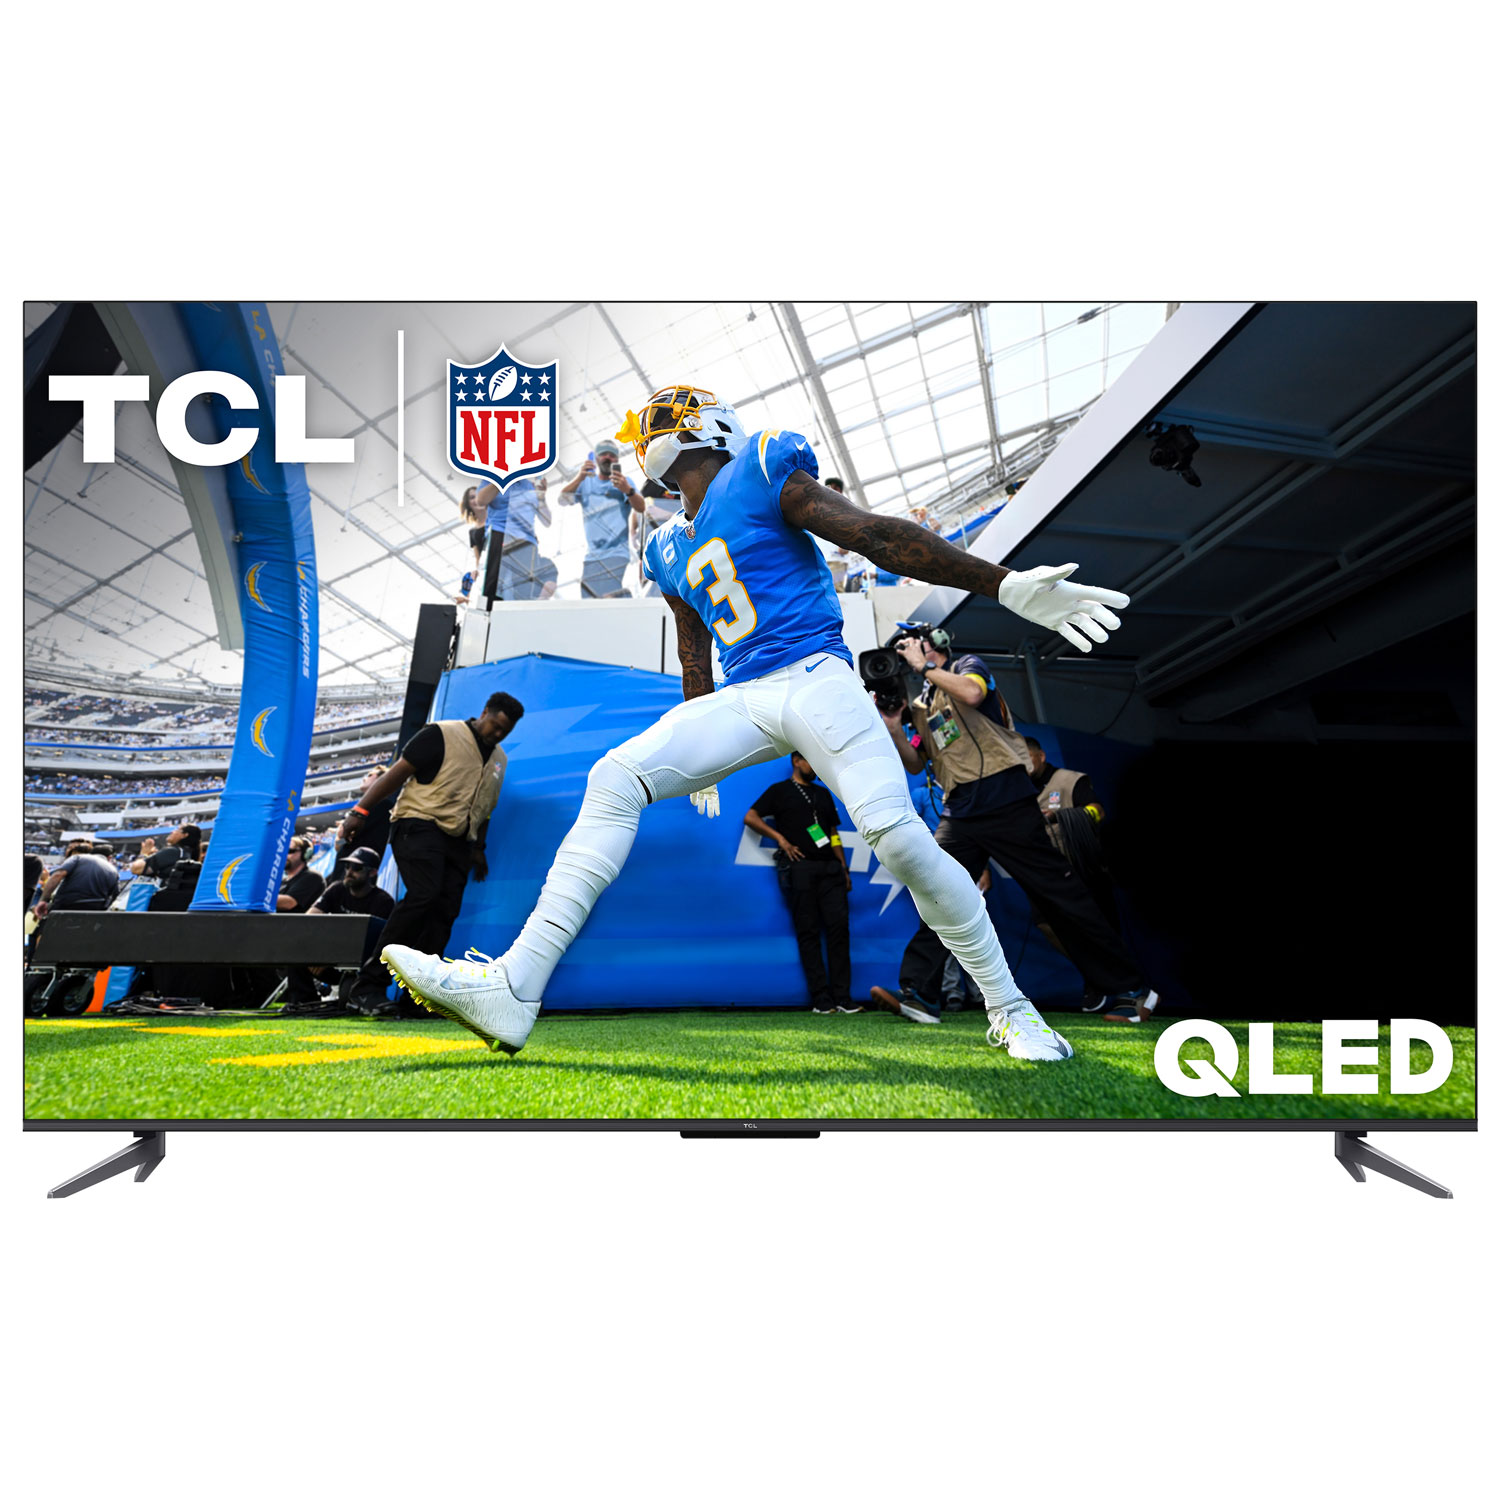 TCL Q5 50" 4K UHD HDR QLED Google TV Smart TV (50Q550G-CA) - 2023 - Only at Best Buy